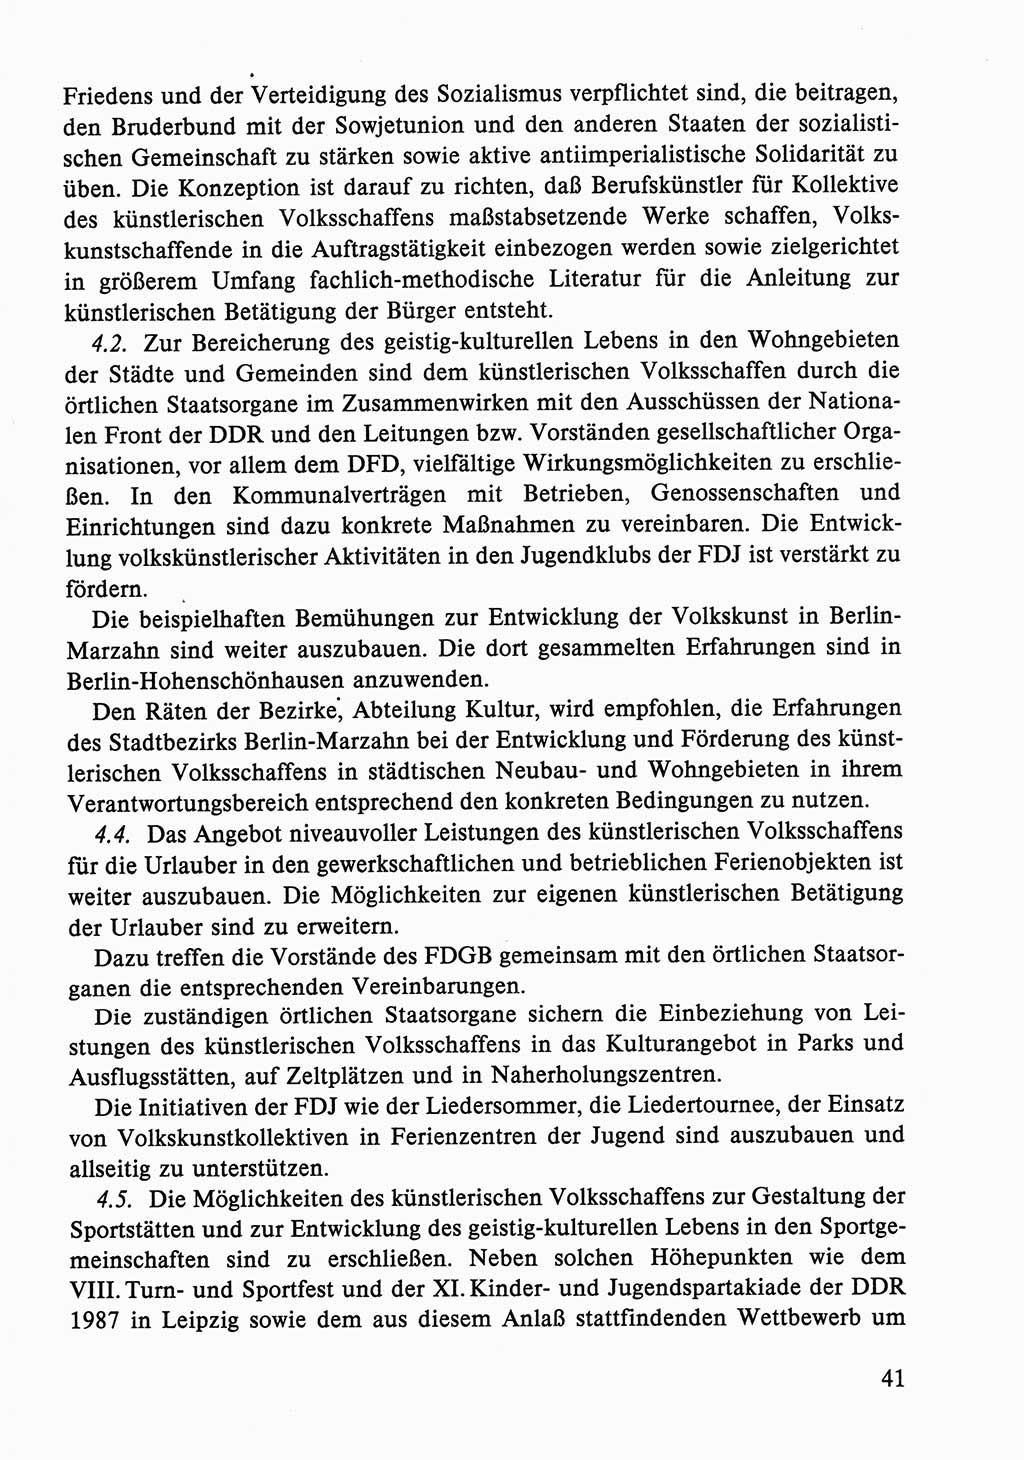 Dokumente der Sozialistischen Einheitspartei Deutschlands (SED) [Deutsche Demokratische Republik (DDR)] 1986-1987, Seite 41 (Dok. SED DDR 1986-1987, S. 41)